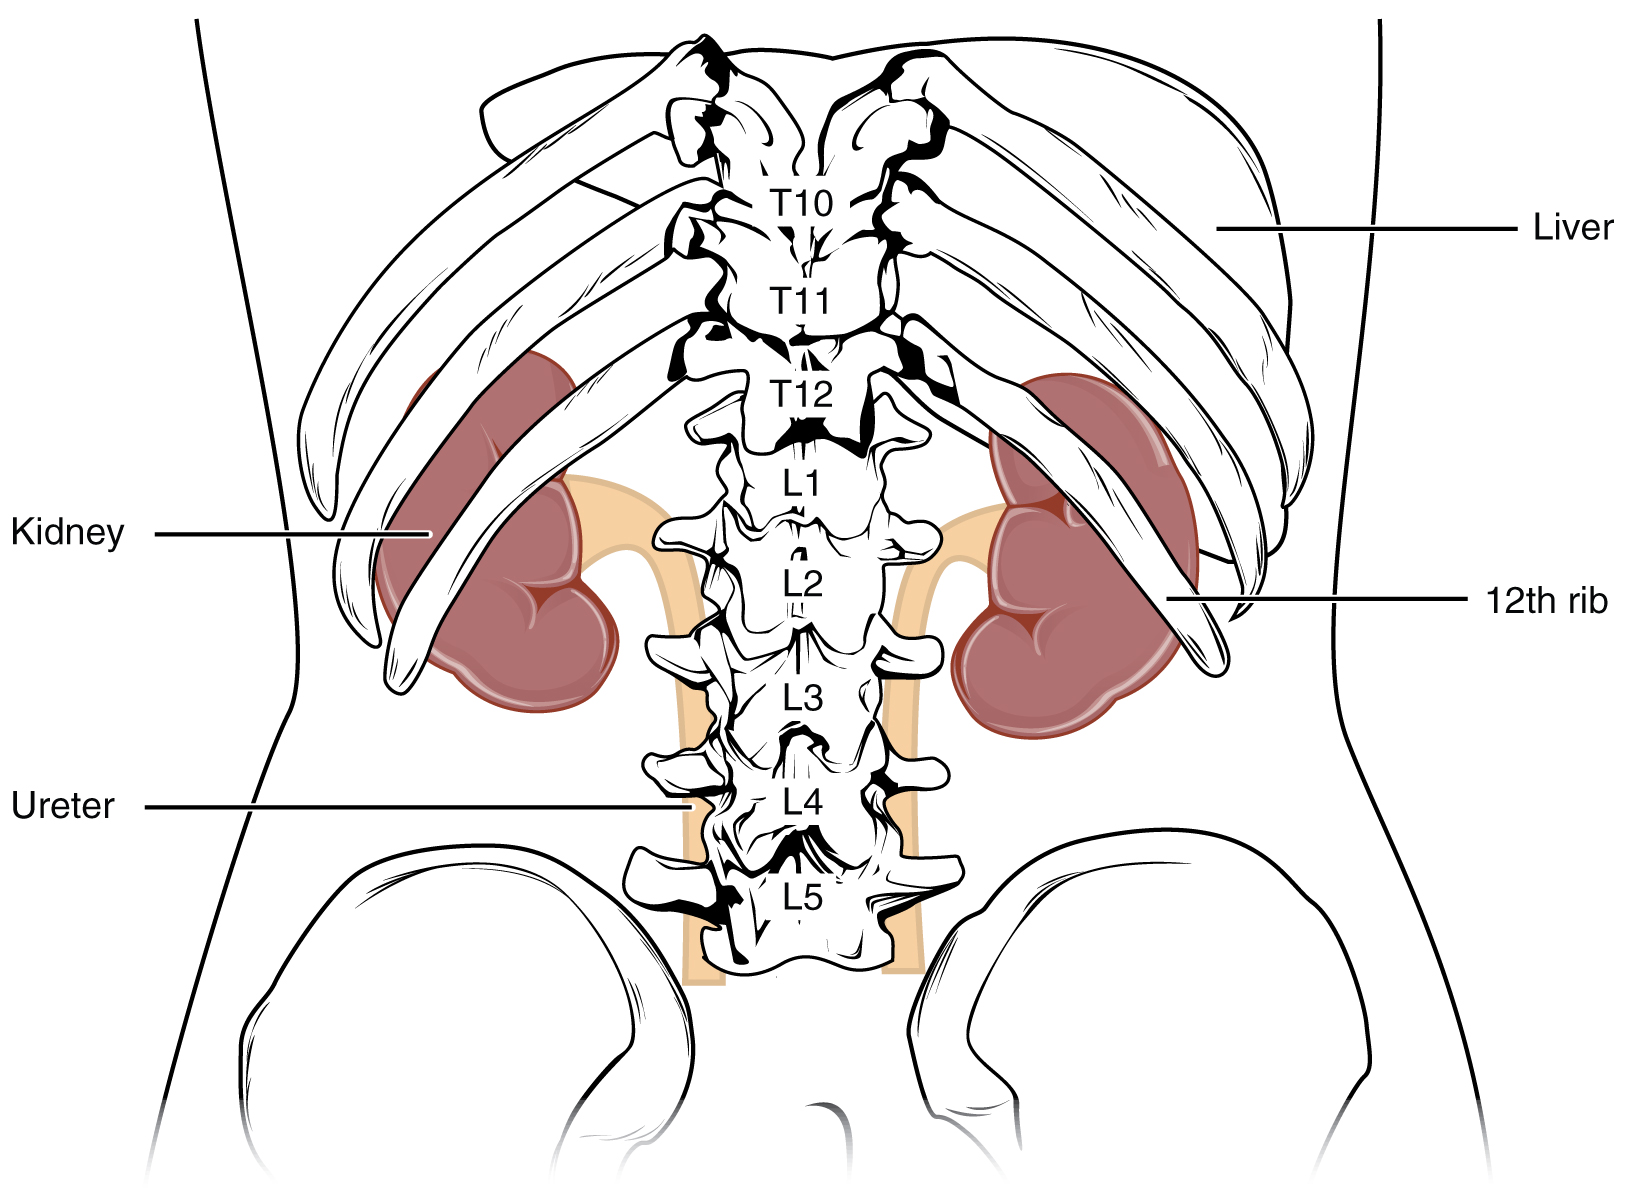 Diagrama de un torso humano que muestra la ubicación de los riñones dentro del torso.